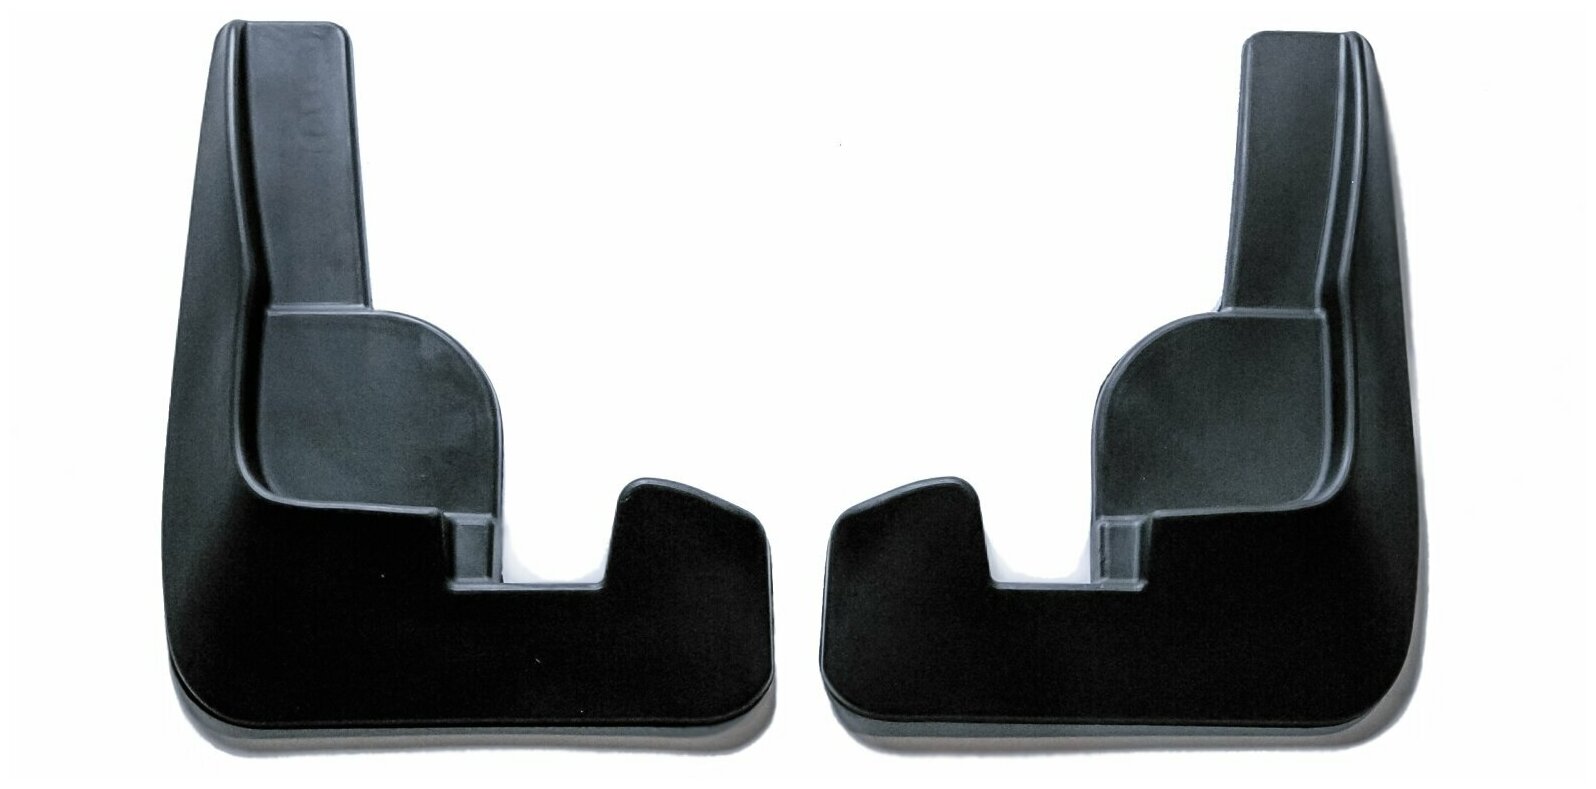 Брызговики резиновые для Nissan Almera (2013-) / Брызговики автомобильные для Ниссан Альмера / Передние